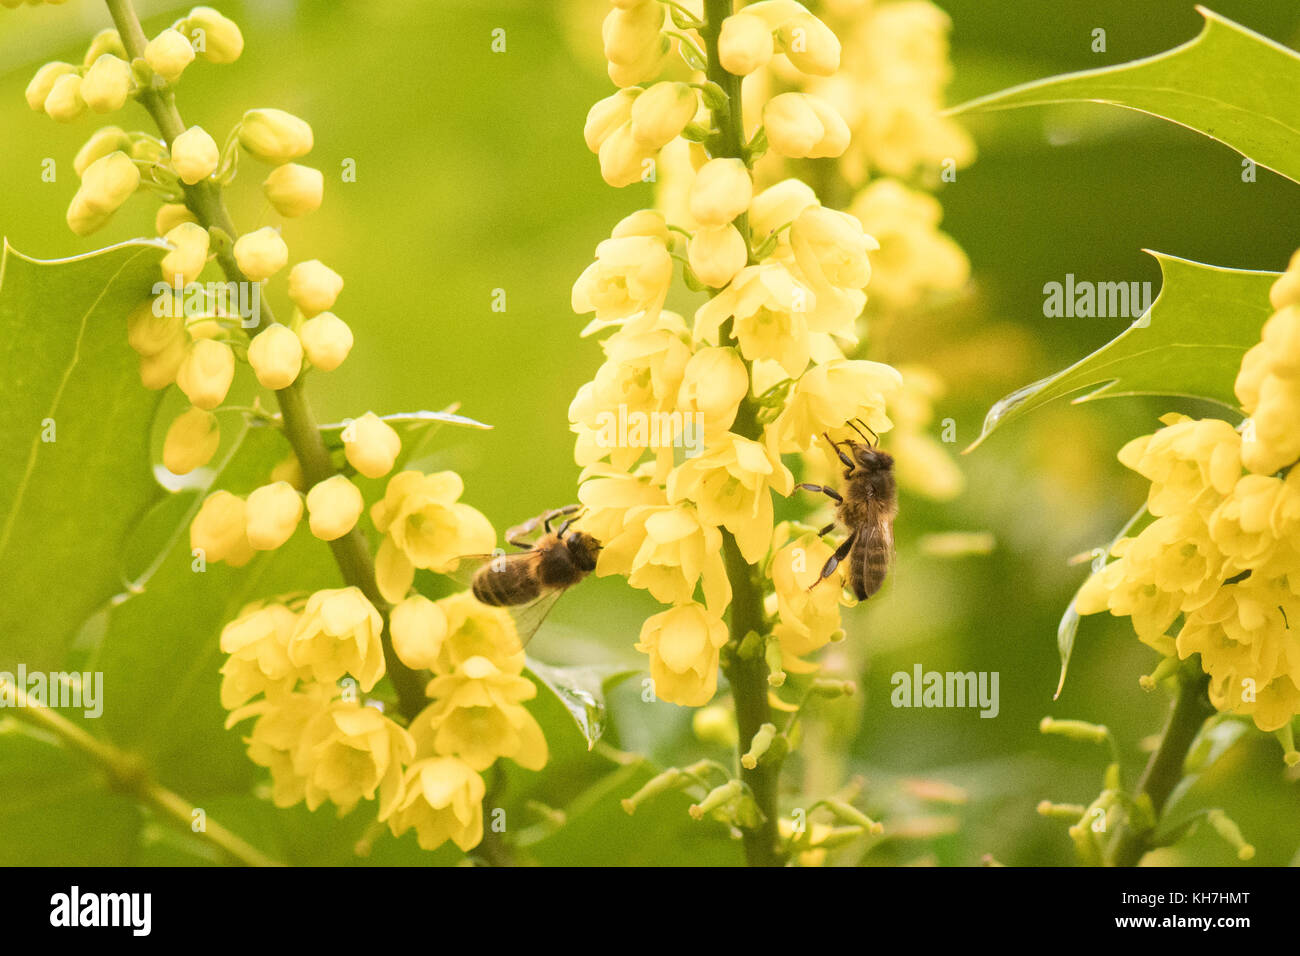 Stirlingshire, Scotland, UK - 14 novembre 2017 : UK weather : abeilles à miel à partir de nectar potable un magnifique Mahonia parfumés ou raisin Oregan sur un jour plus doux, plus sec dans Stirlingshire. Les abeilles sortent de leur ruche à fourrage brièvement à des températures supérieures à 10 degrés Celsius ou plus, mais ne sera pas aventurer loin de leurs ruches. Mahonia est l'un des rares arbustes à produire du nectar dans les températures fraîches et ses fleurs aux couleurs vives sont un aimant pour les abeilles Crédit : Kay Roxby/Alamy Live News Banque D'Images